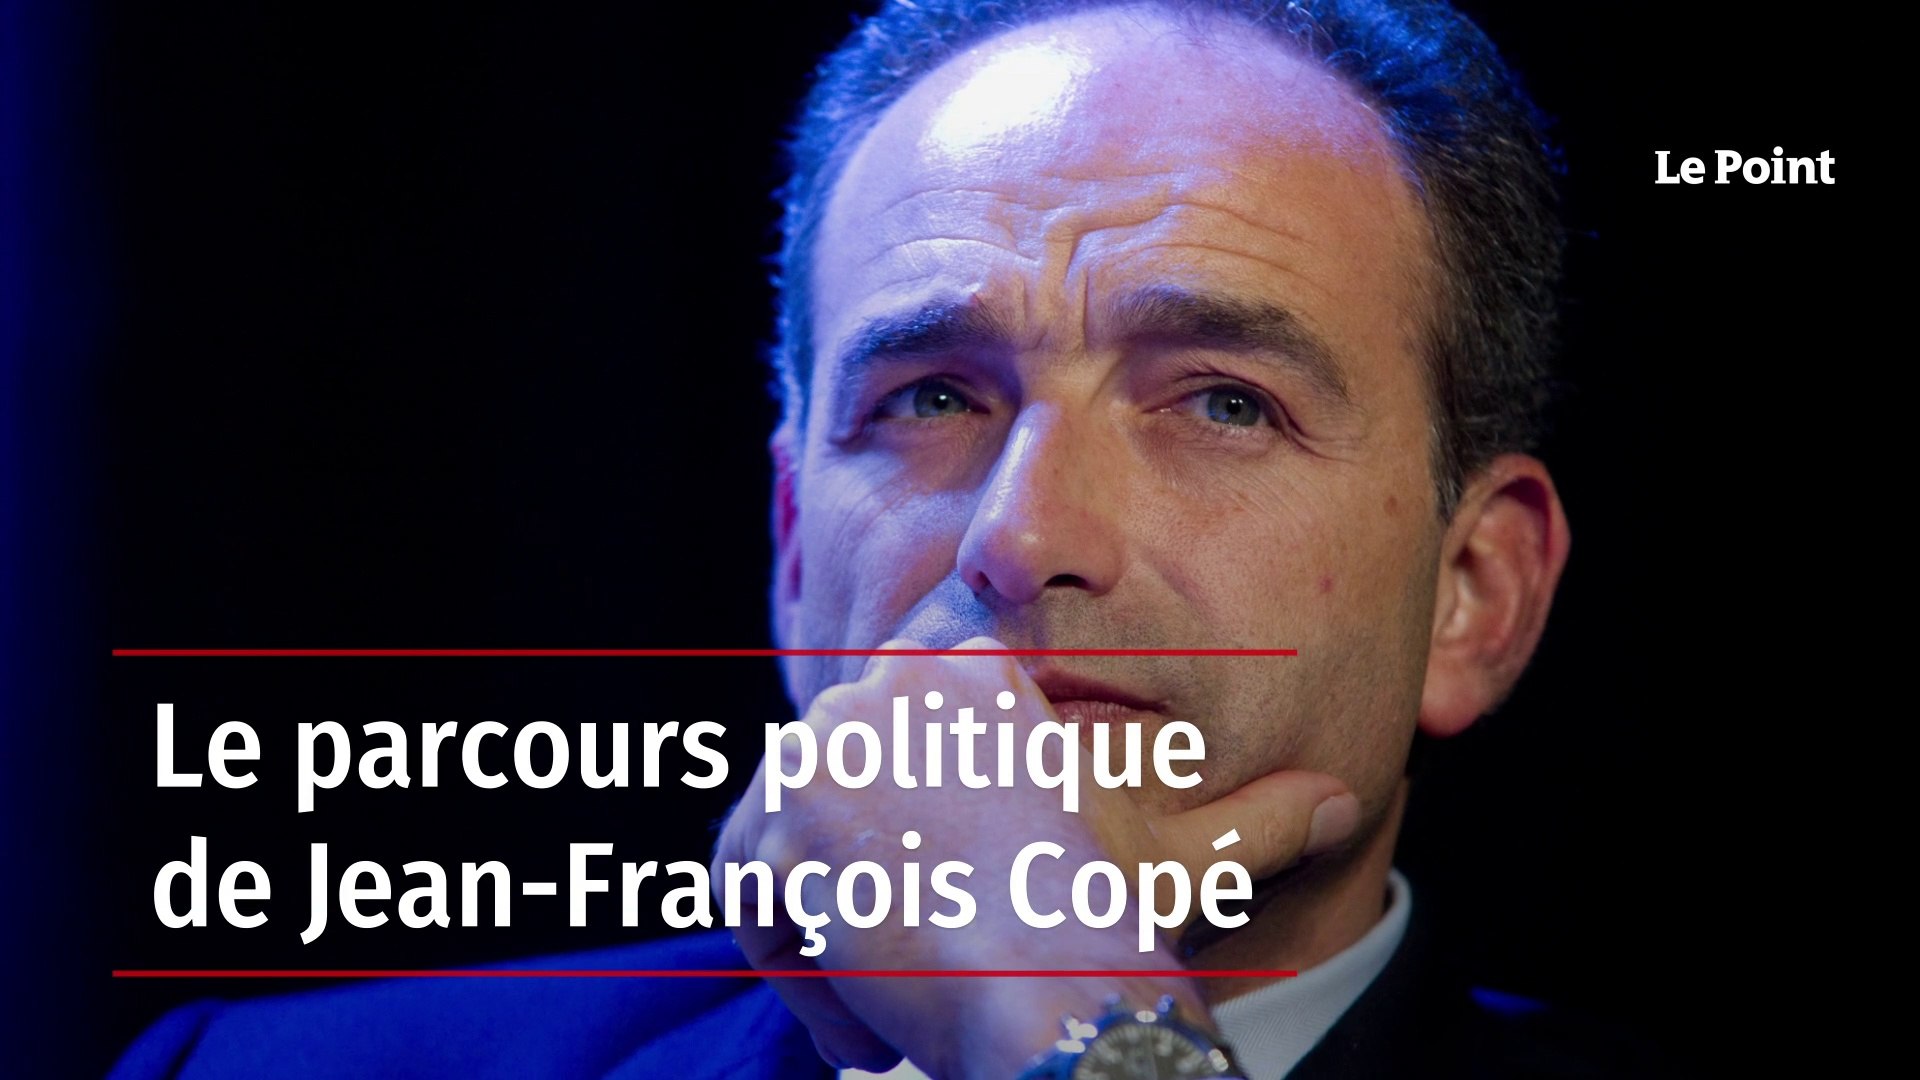 Le parcours politique de Jean-François Copé - Vidéo Dailymotion